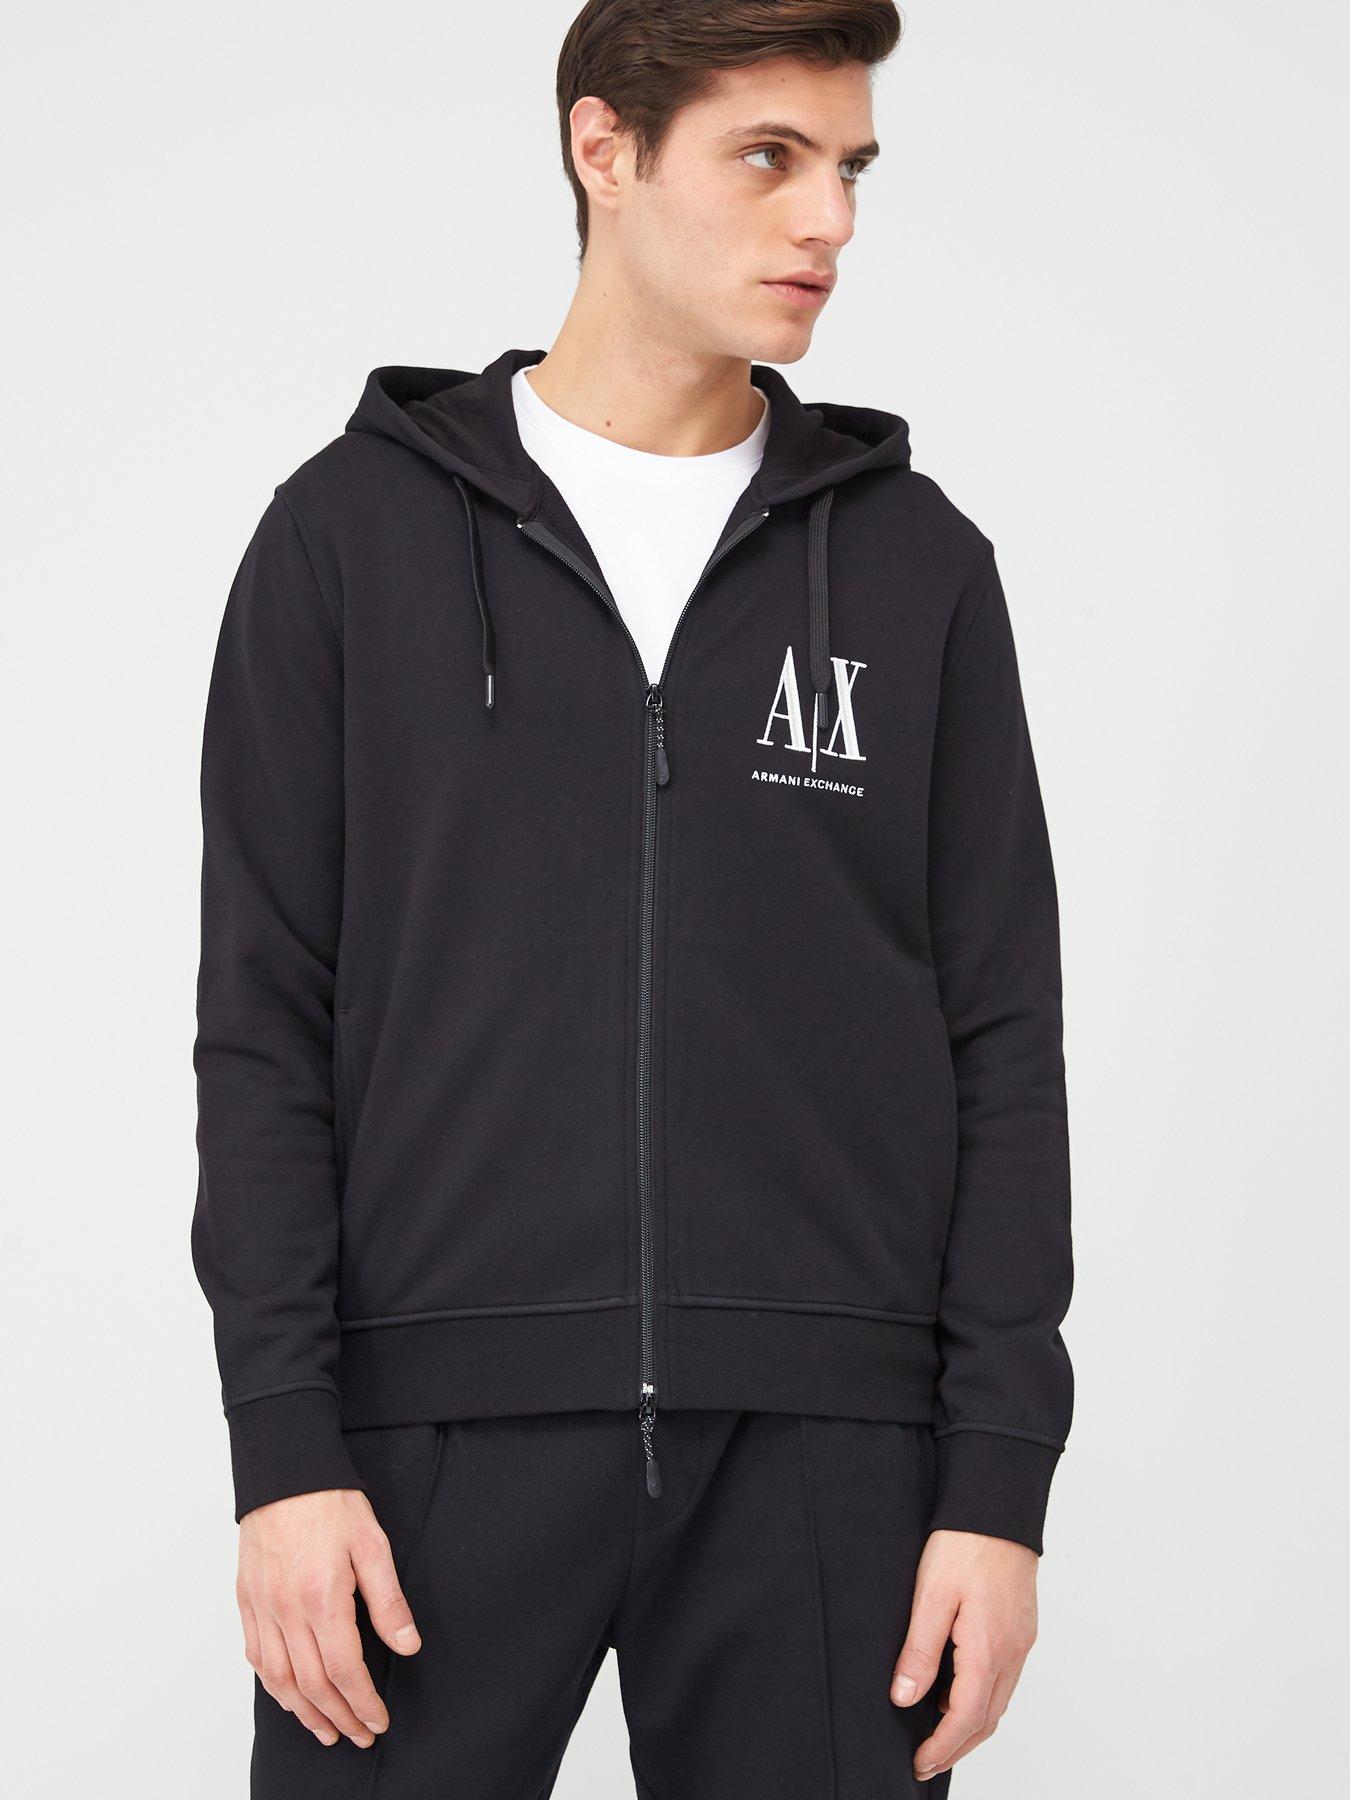 ax hoodie